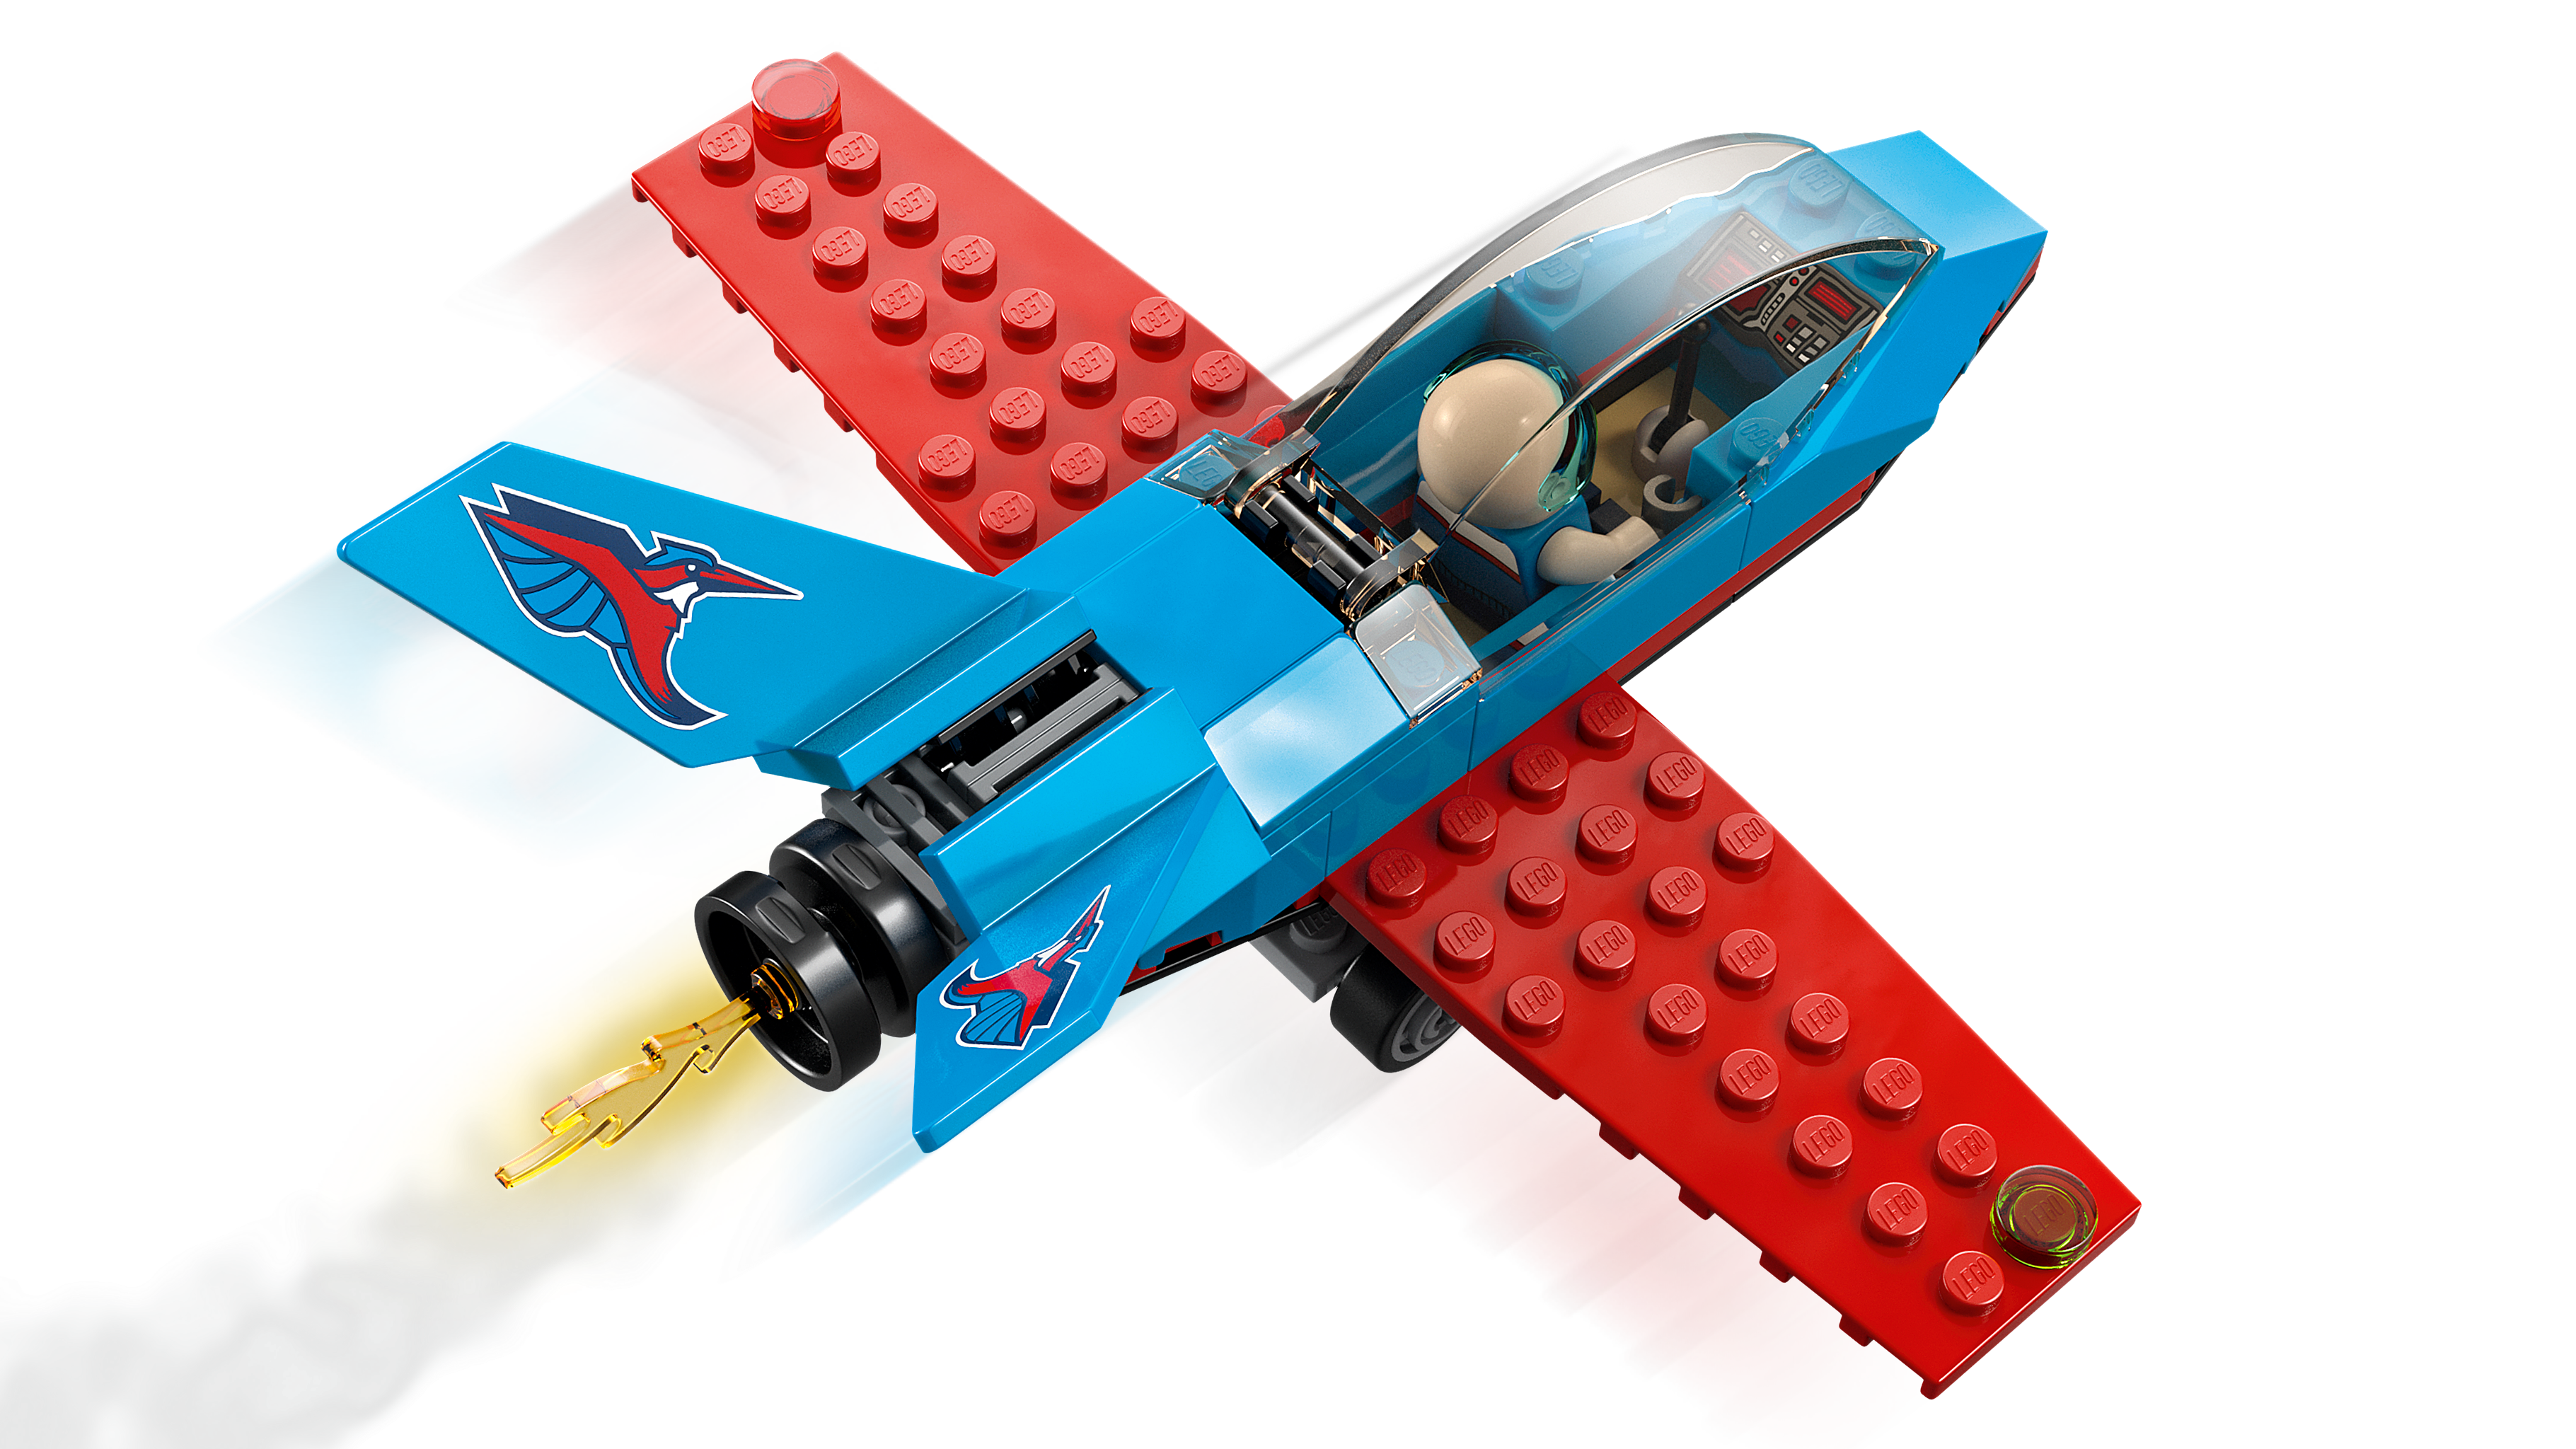 スタントプレーン 60323 - レゴ®シティ セット - LEGO.comキッズ